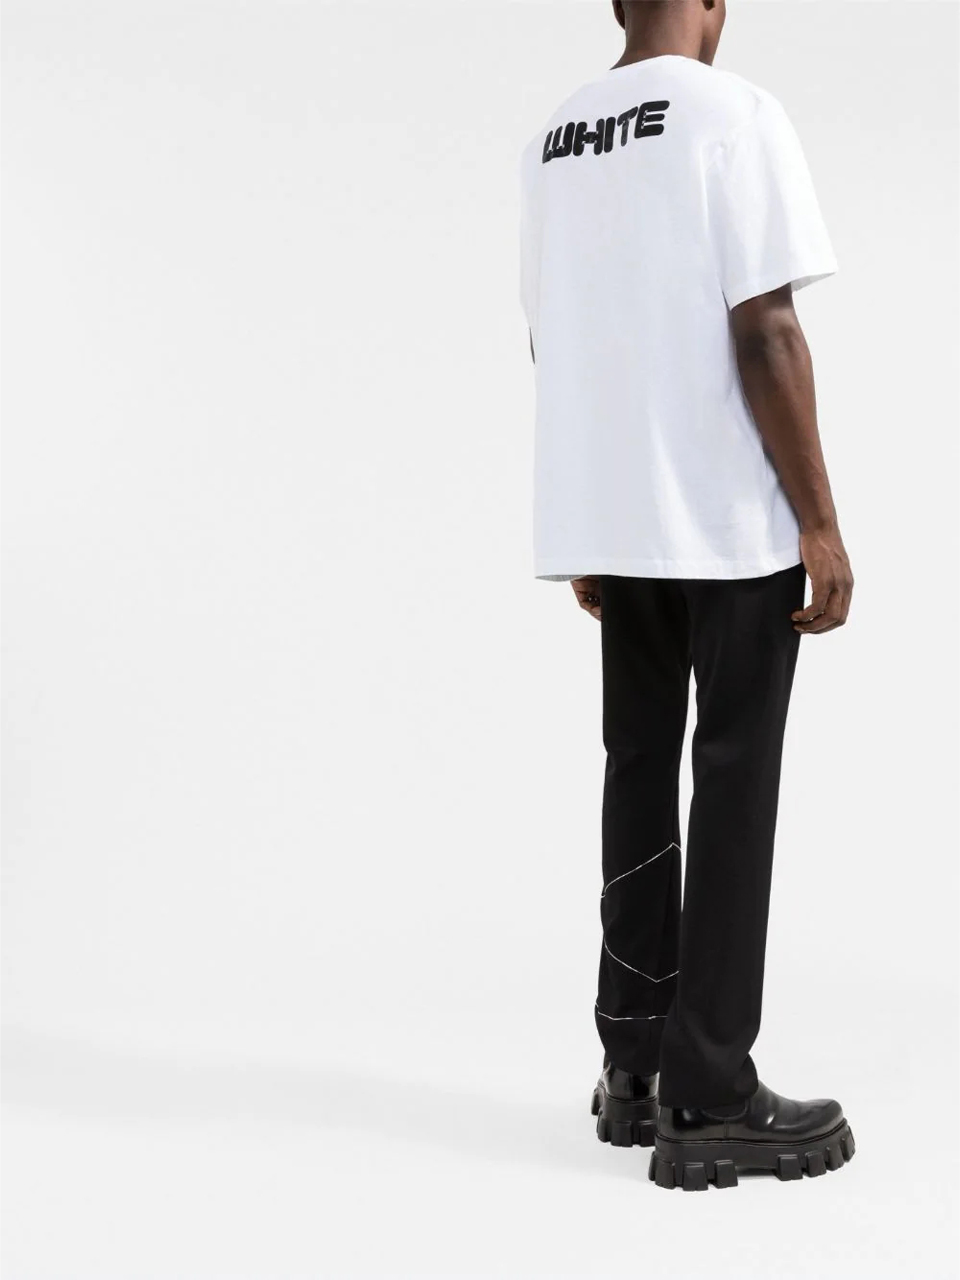 Imagem de: Camiseta Off-White Branca com Logo Preto